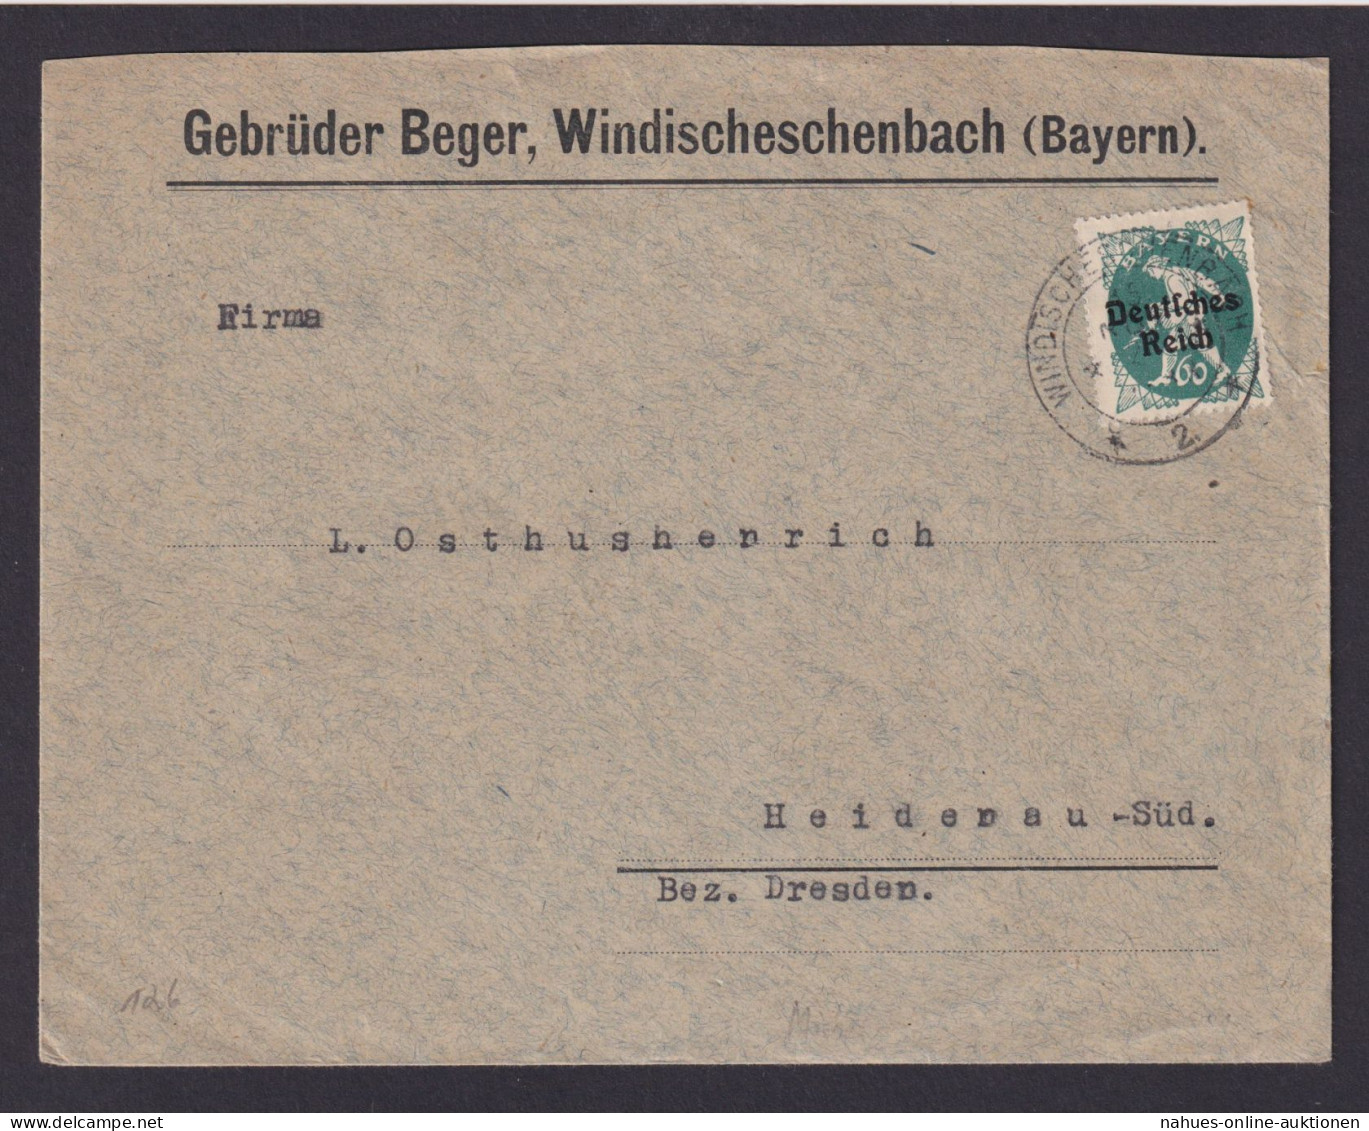 Deutsches Reich Windischeschenbach Bayern Geb. Berger Brief EF Bayern Abschied - Covers & Documents